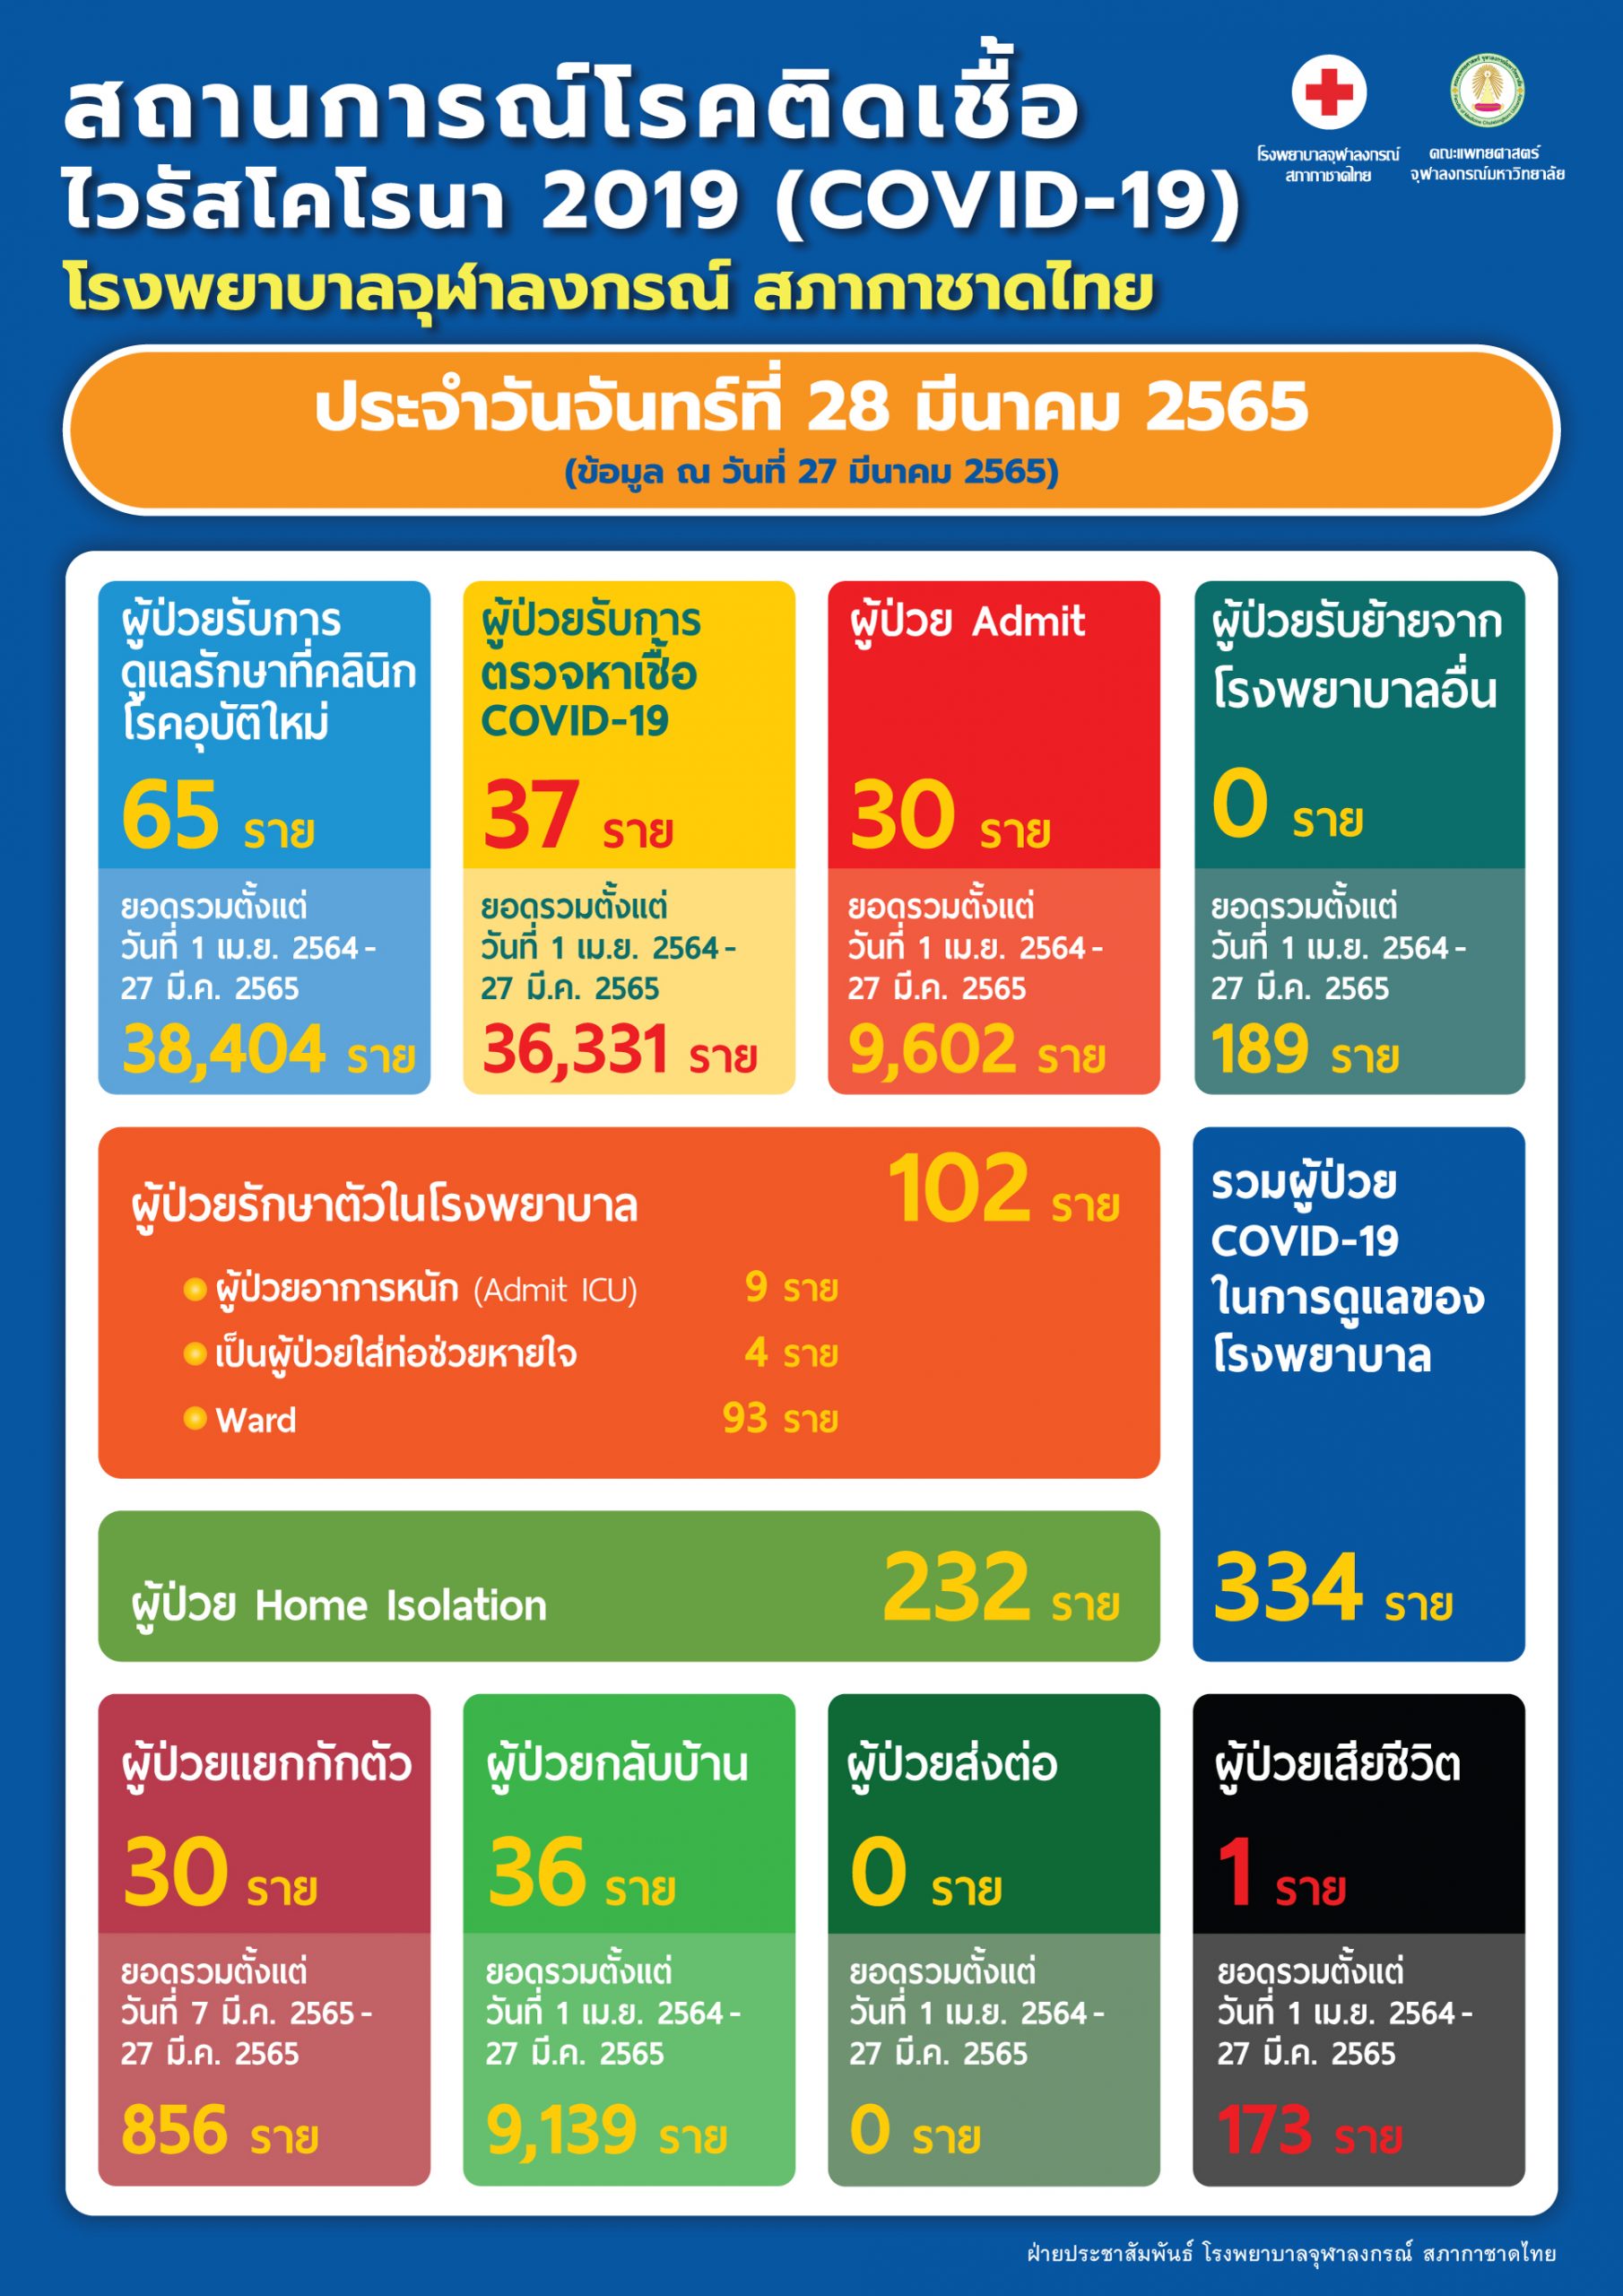 สถานการณ์โรคติดเชื้อไวรัสโคโรนา 2019 (COVID-19) โรงพยาบาลจุฬาลงกรณ์ สภากาชาดไทย ประจำวันจันทร์ที่ 28 มีนาคม 2565